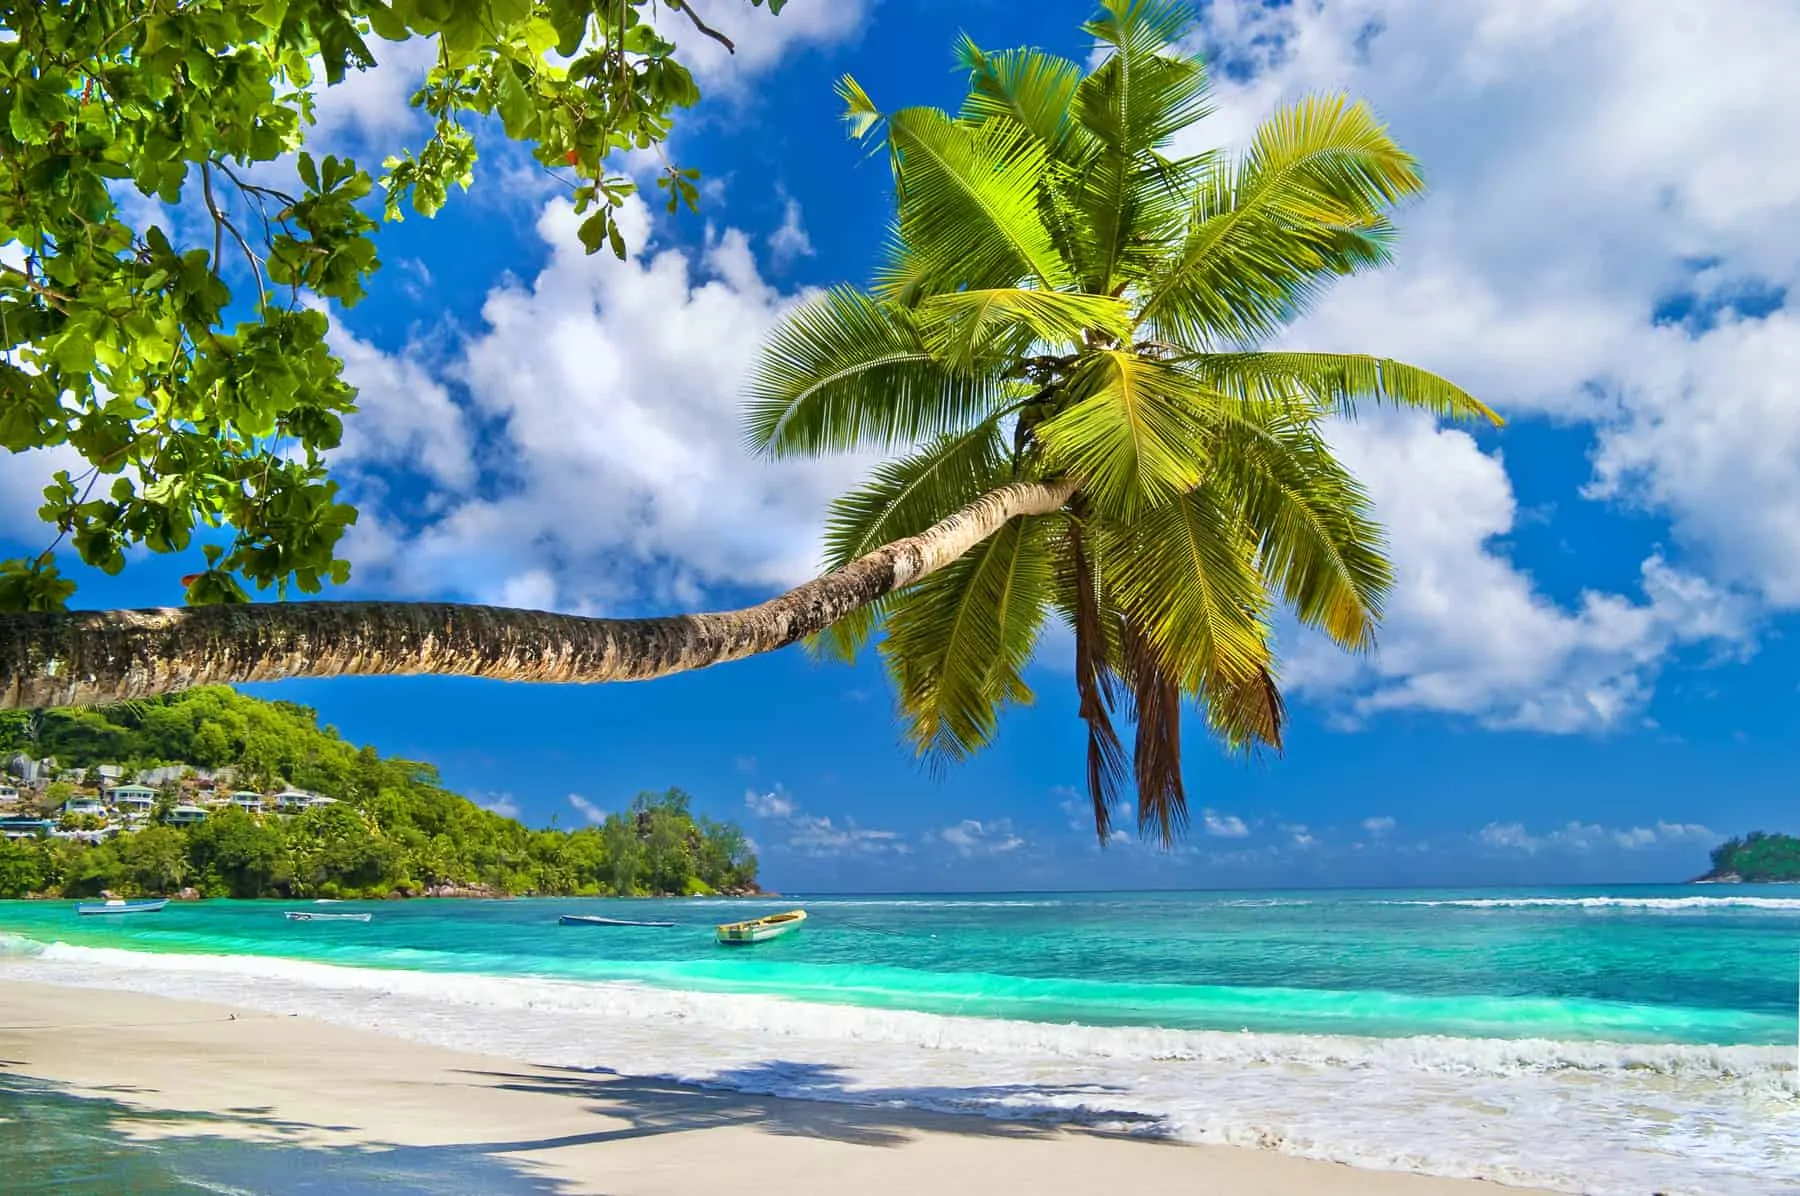 Bedste rejsemål for en dejlig ø-ferie - Seychellerne